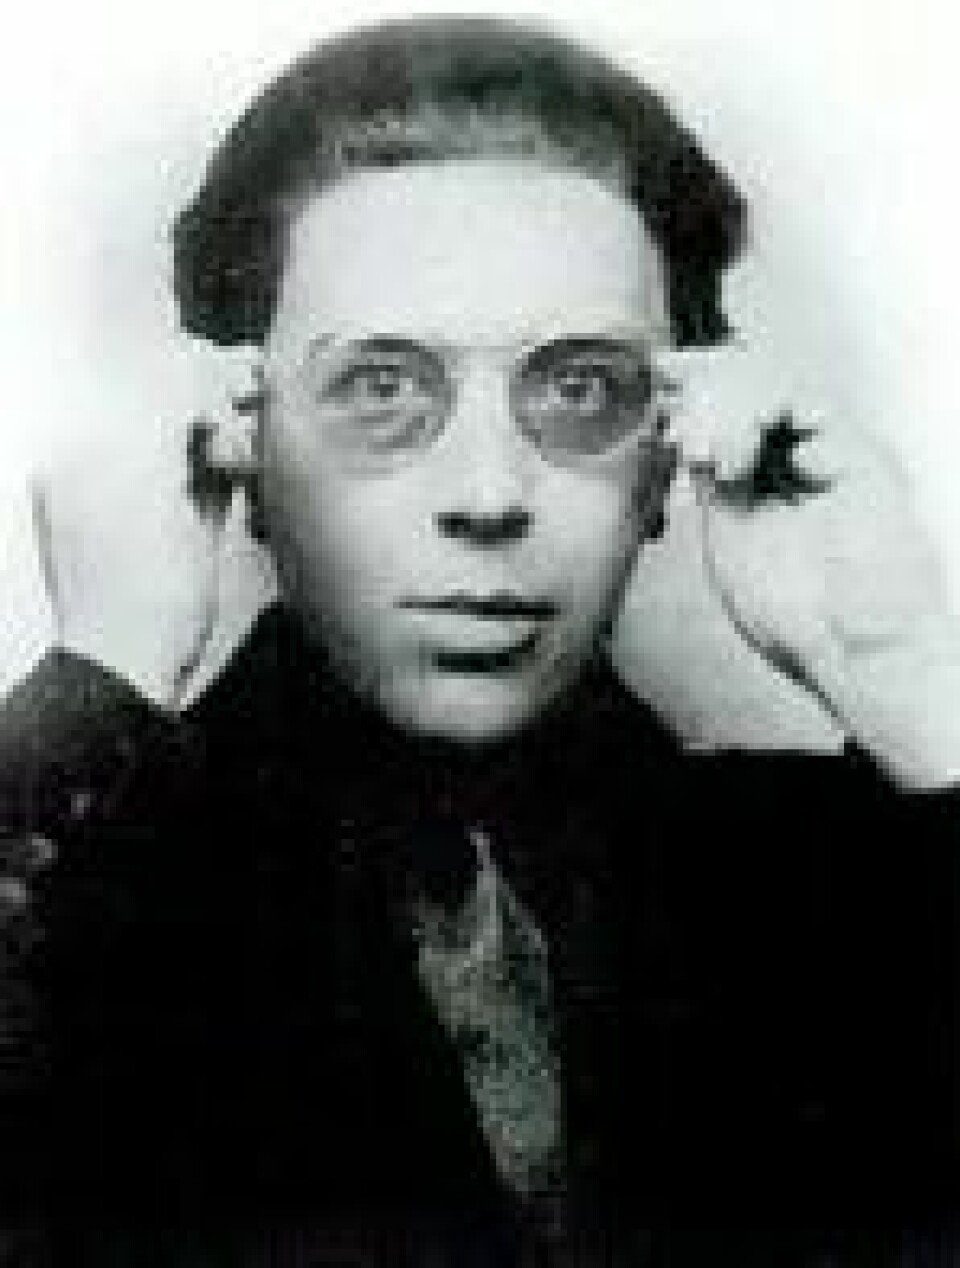 Inn i drømmen: Surrealismen var først og fremst en revolusjonær bevegelse, hevdet André Breton på 1920-tallet. Le Brun var medlem av han siste surrealistiske krets på 1960-tallet. (Kilde: Wikimedia commons)